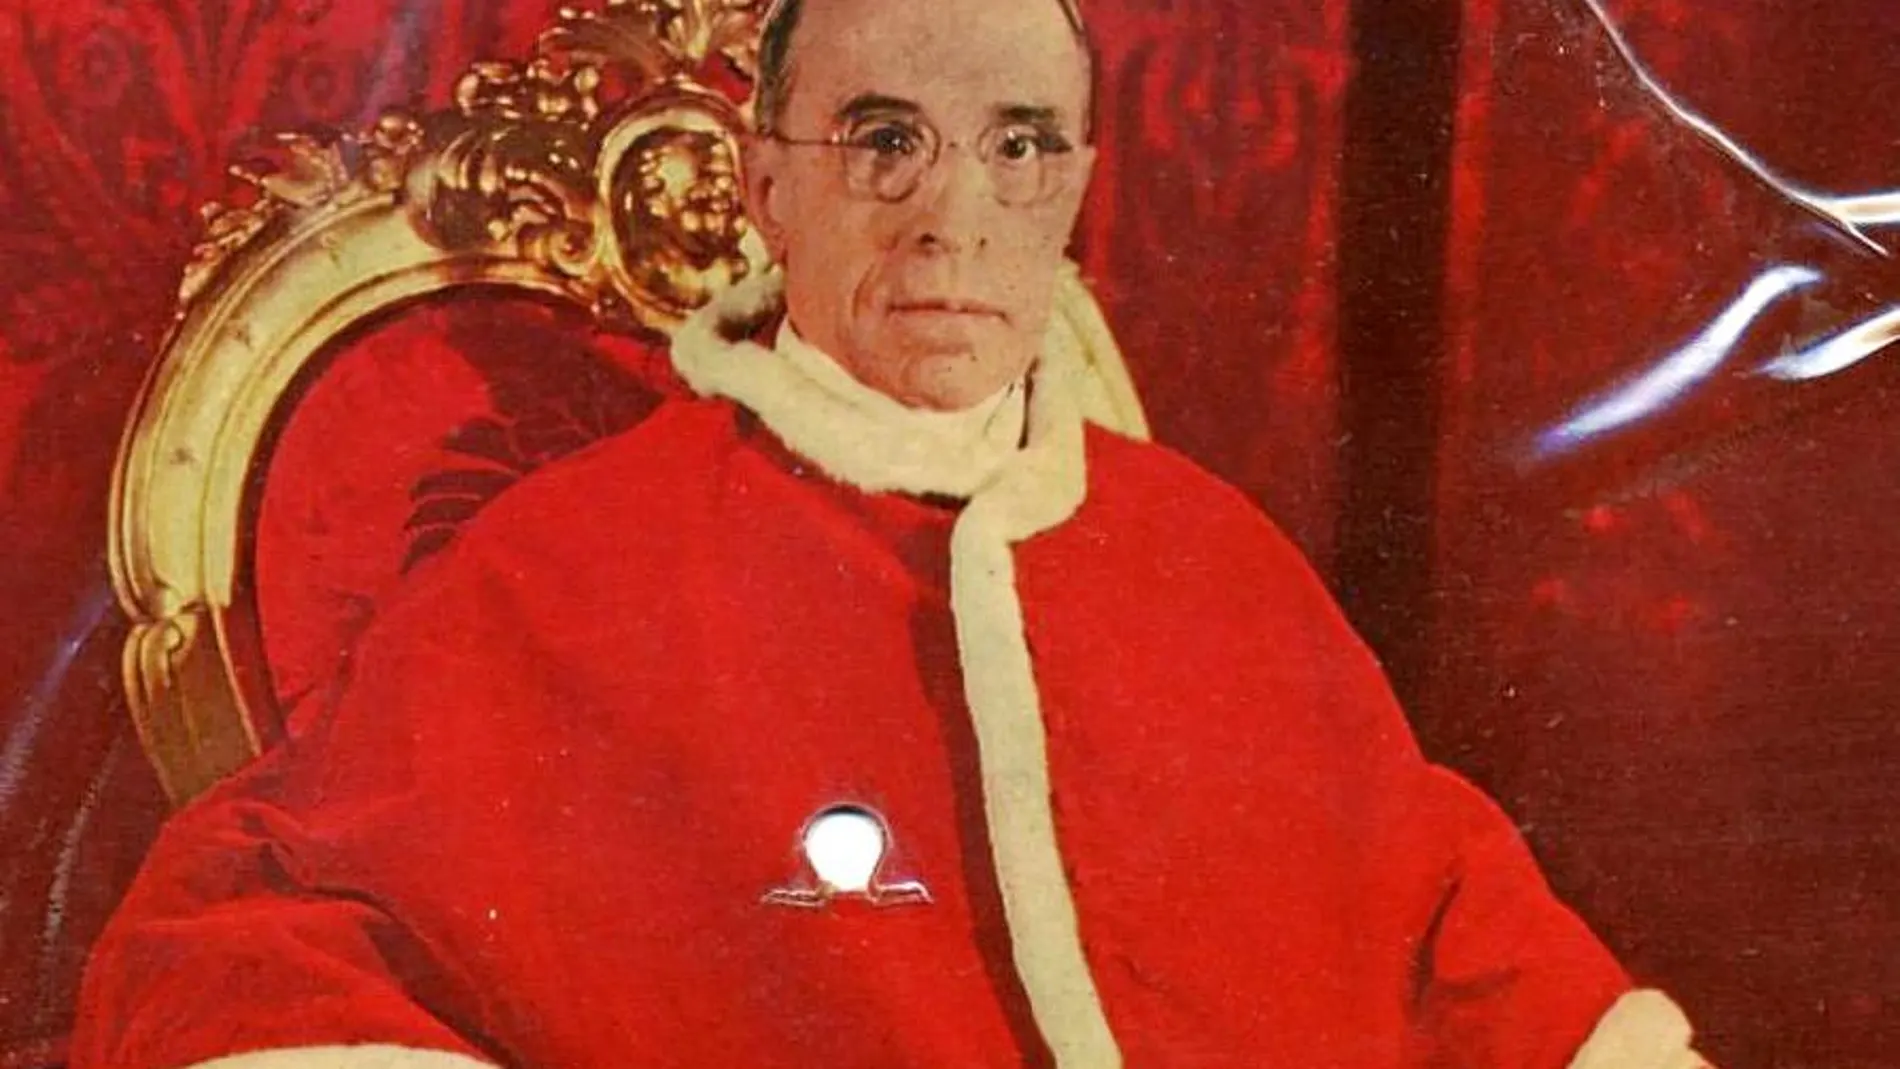 El pontificado de Pío XII duró desde 1939 hasta 1958